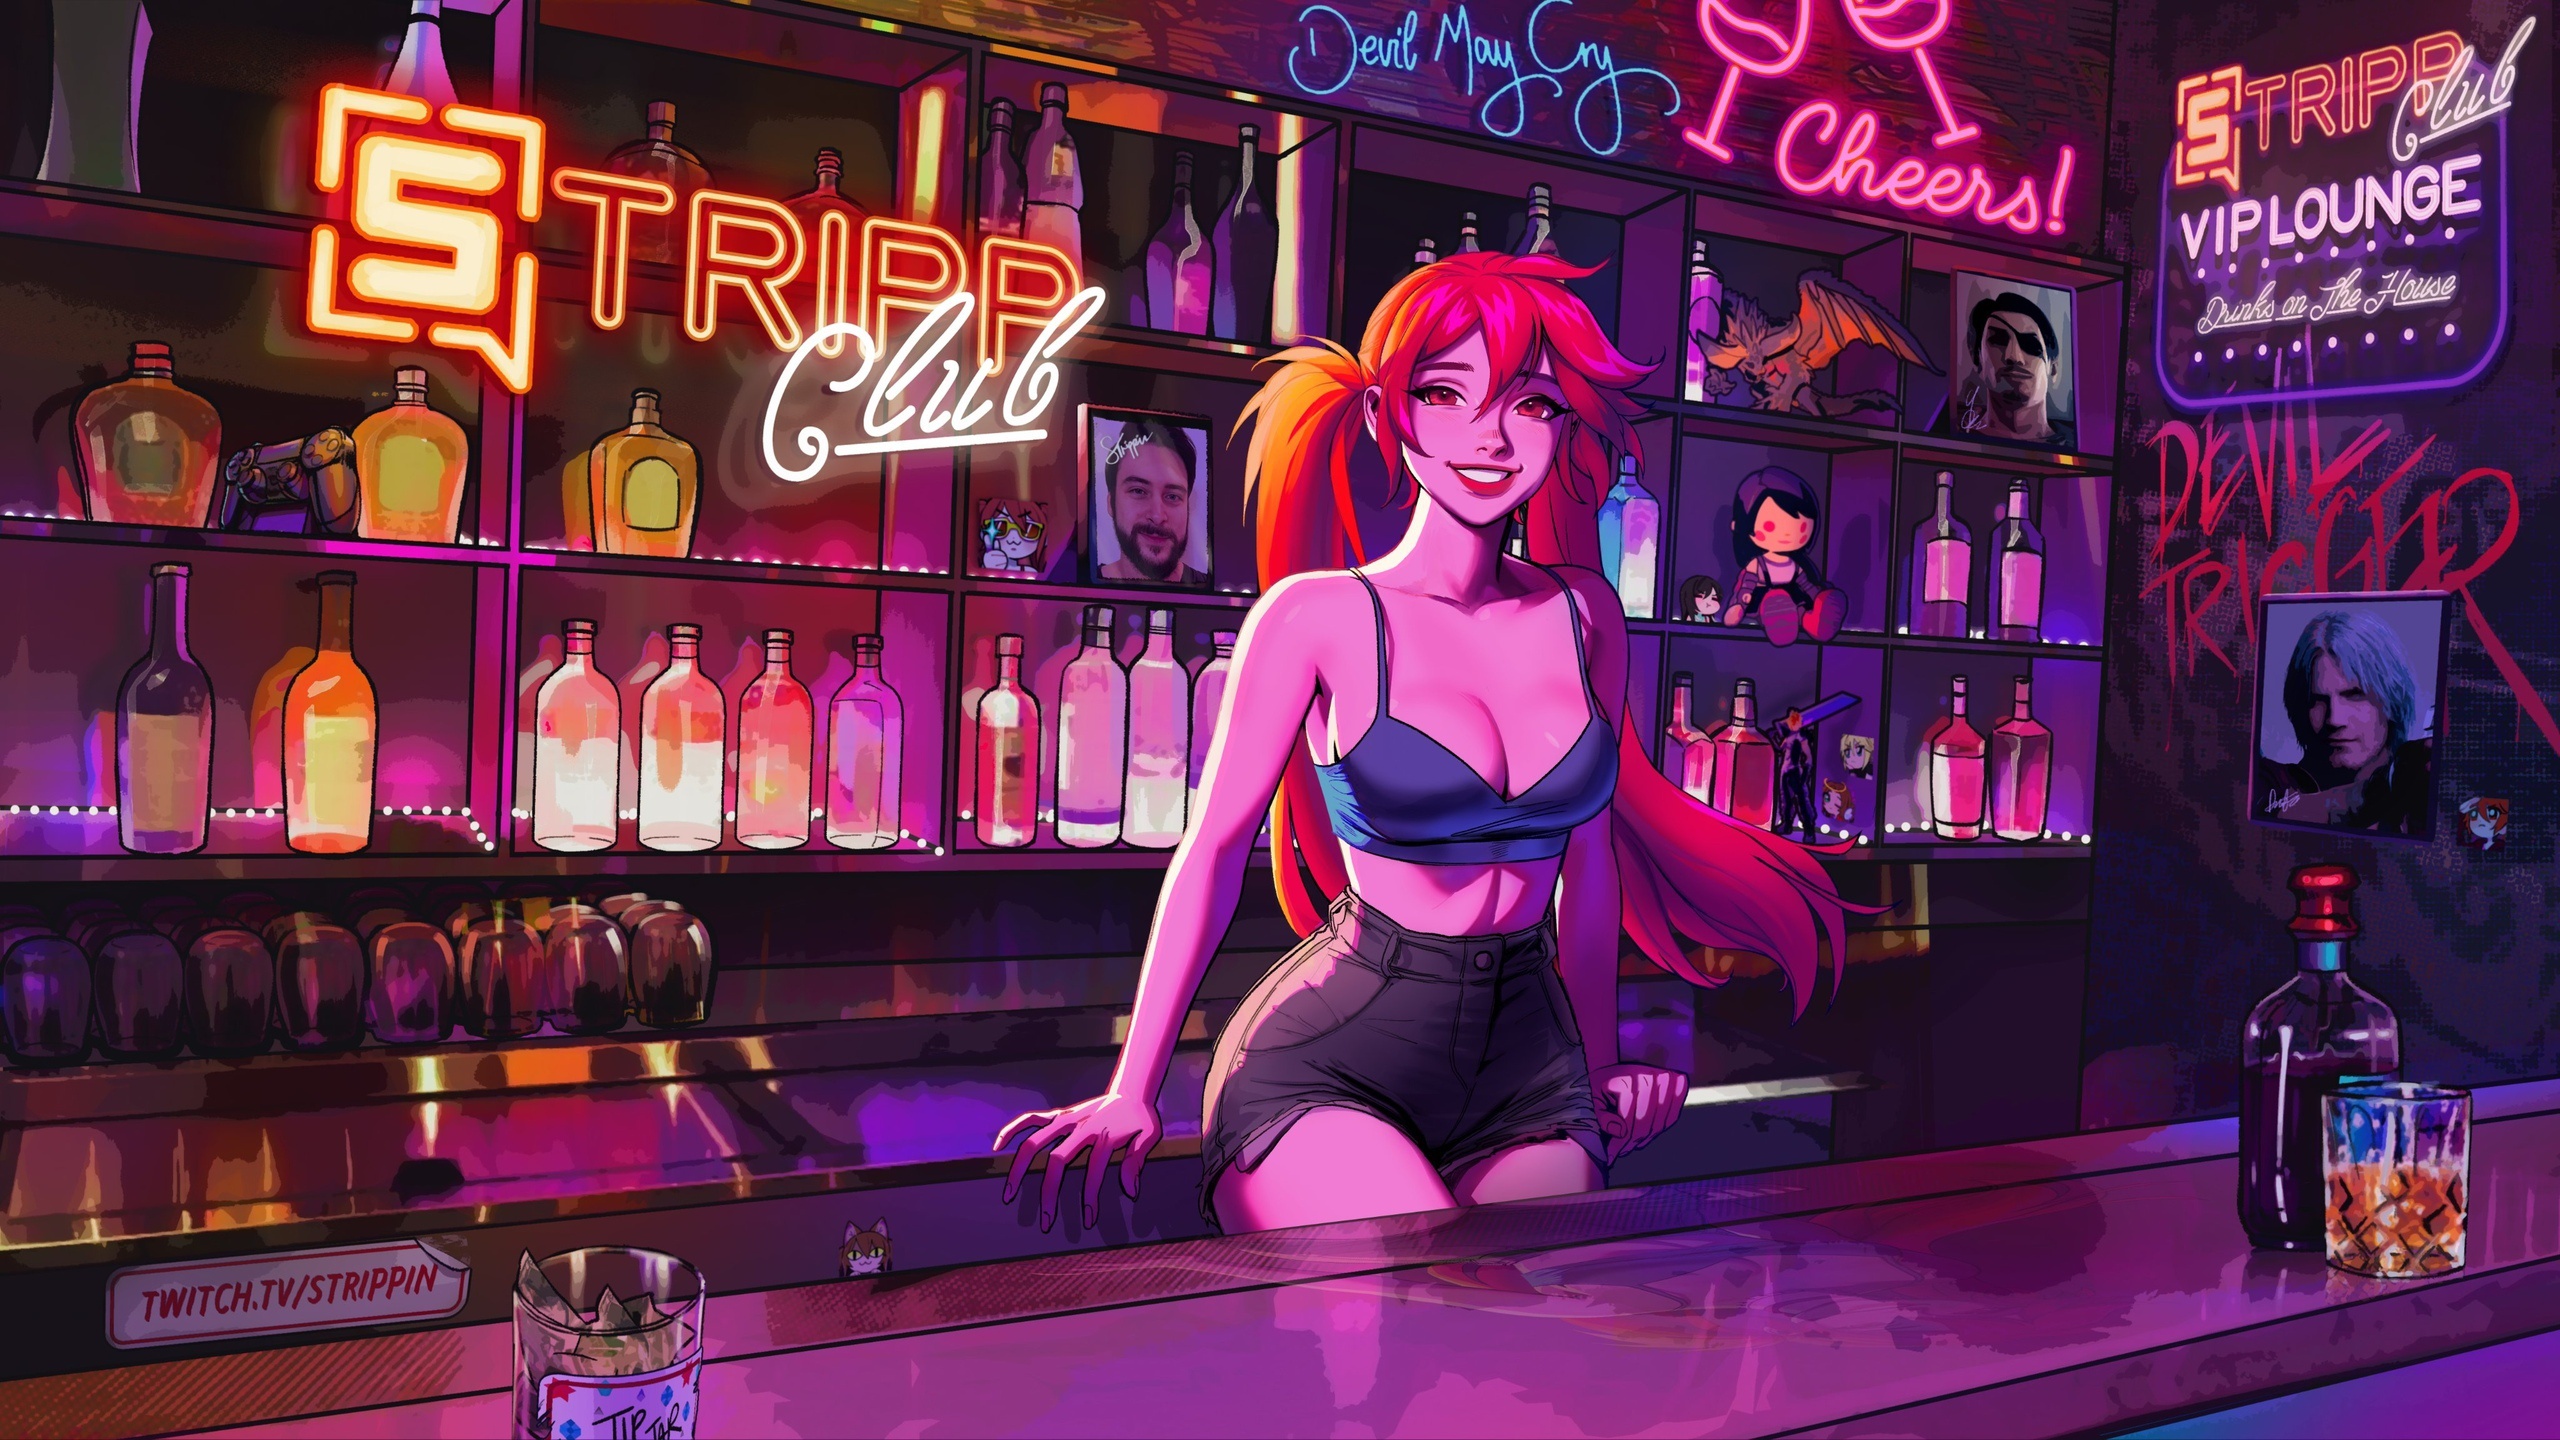 Голый бар с рыжей девушкой на стойке